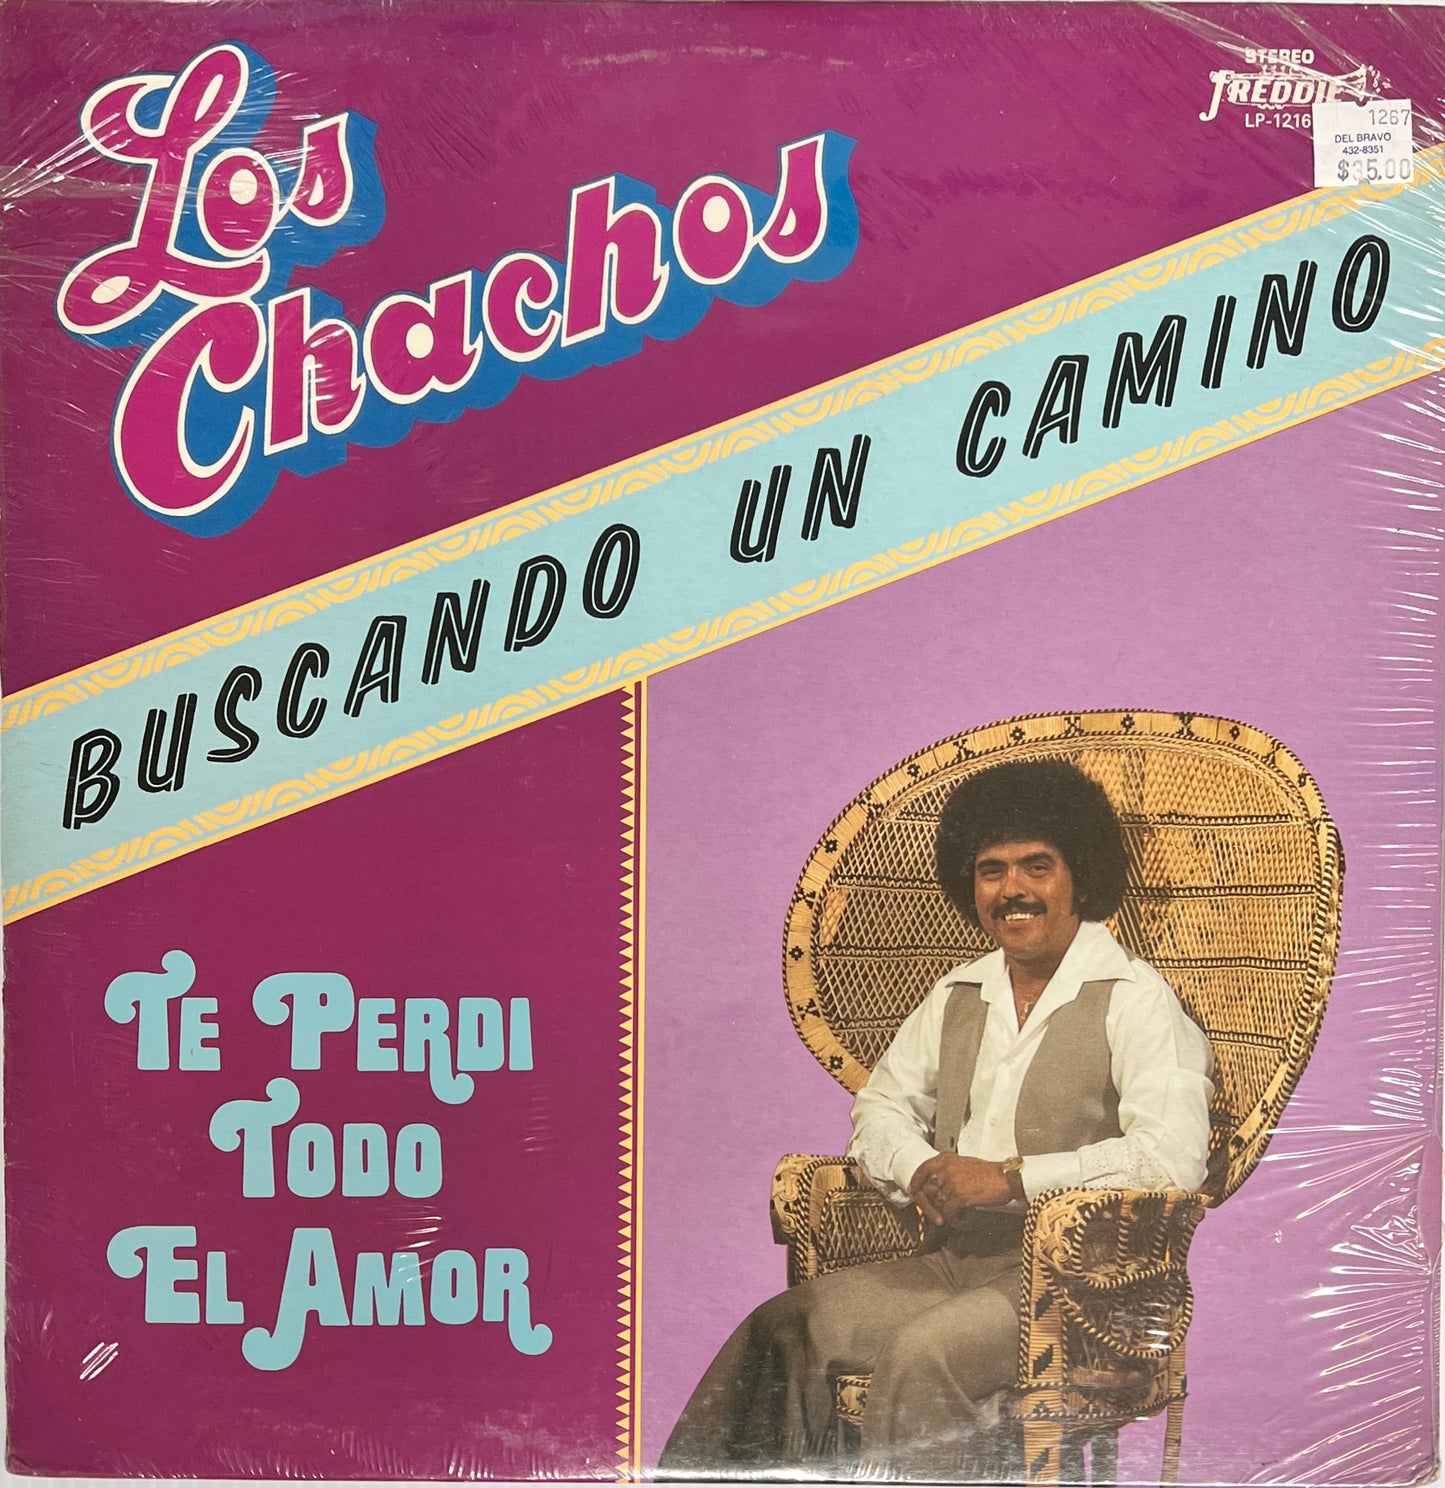 Los Chachos - Buscando Un Camino (Vinyl)